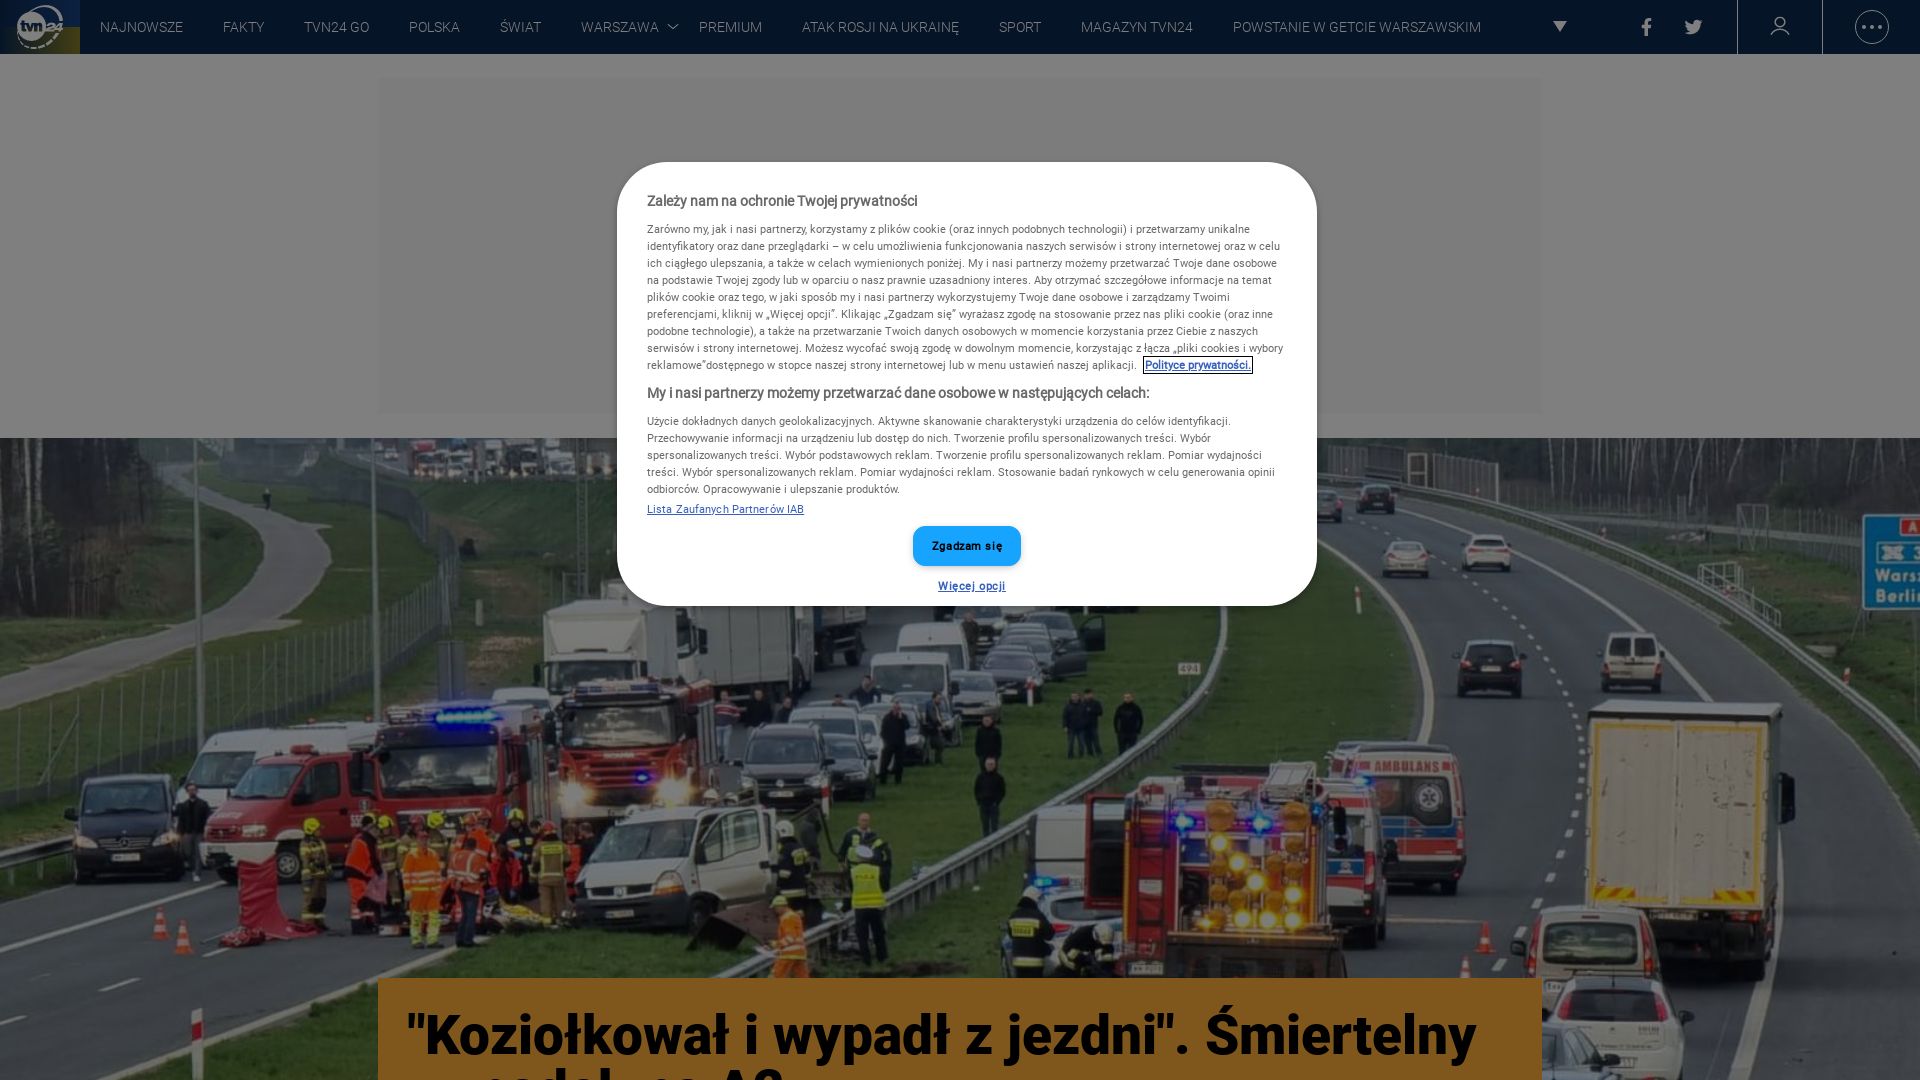 Status do site tvn24.pl está   ONLINE